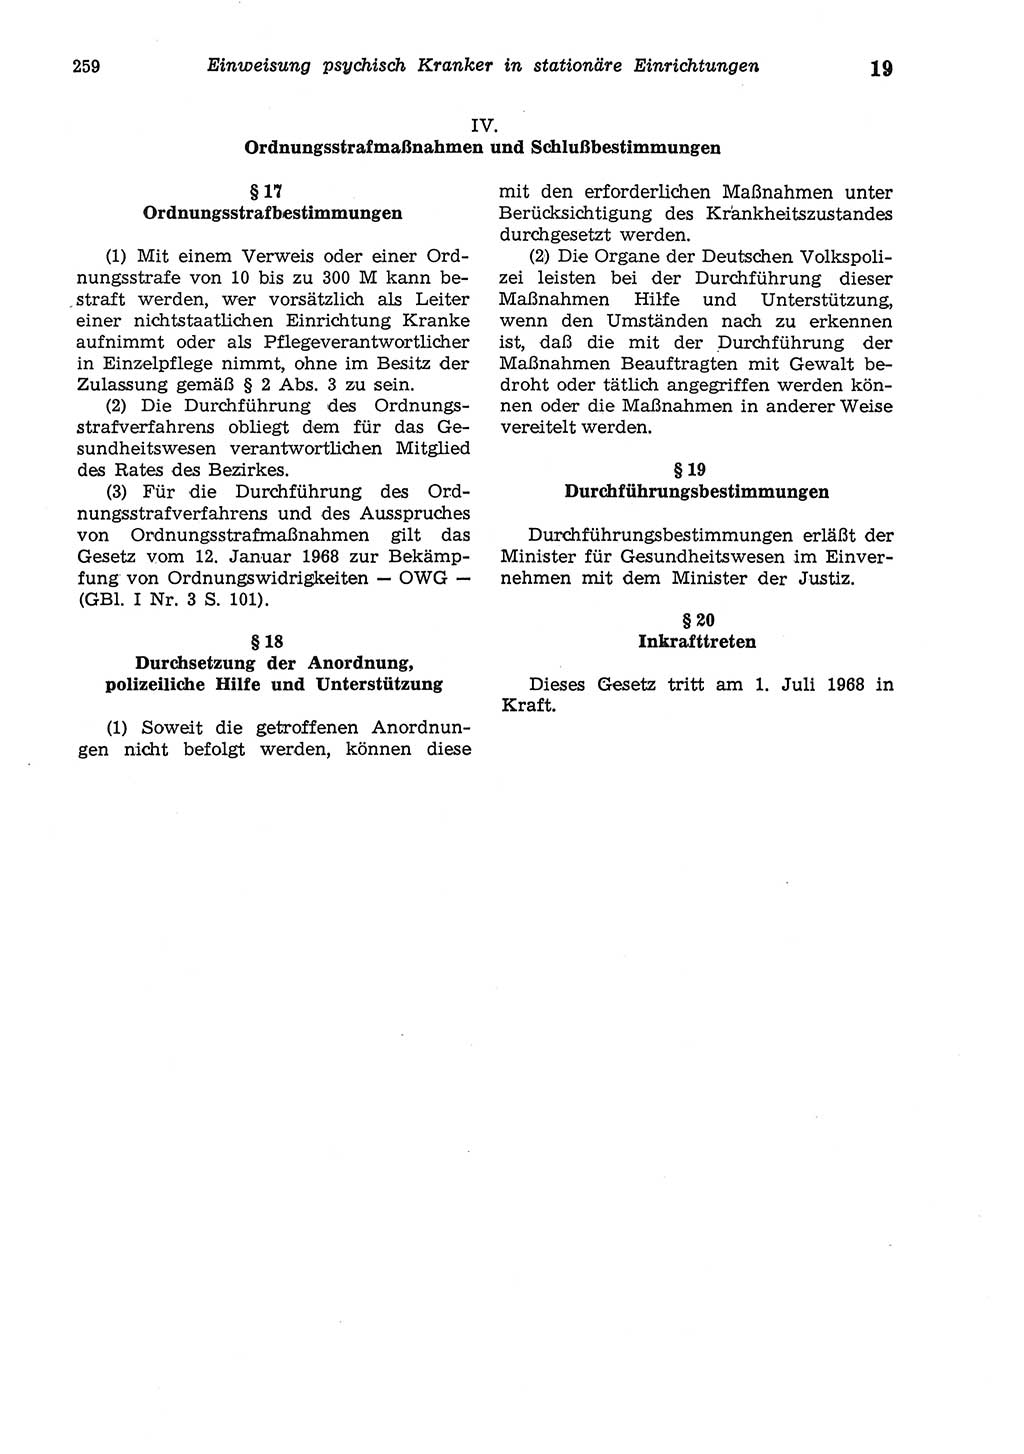 Strafgesetzbuch (StGB) der Deutschen Demokratischen Republik (DDR) und angrenzende Gesetze und Bestimmungen 1975, Seite 259 (StGB DDR Ges. Best. 1975, S. 259)